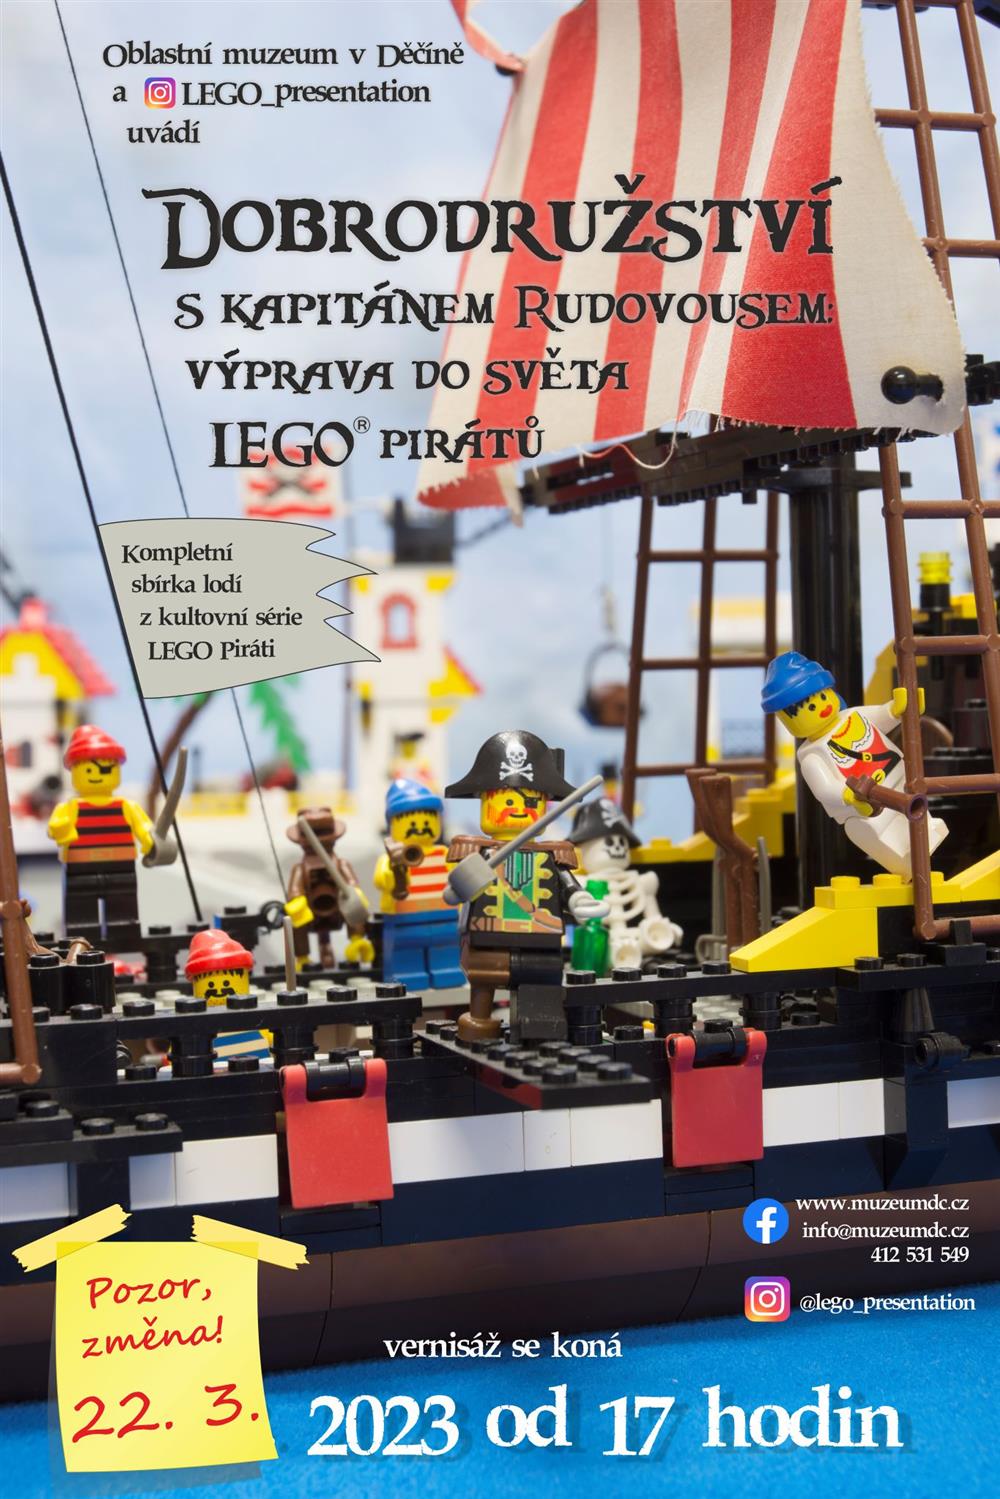 Dobrodružství s kapitánem Rudovousem: Výprava do světa LEGO pirátů